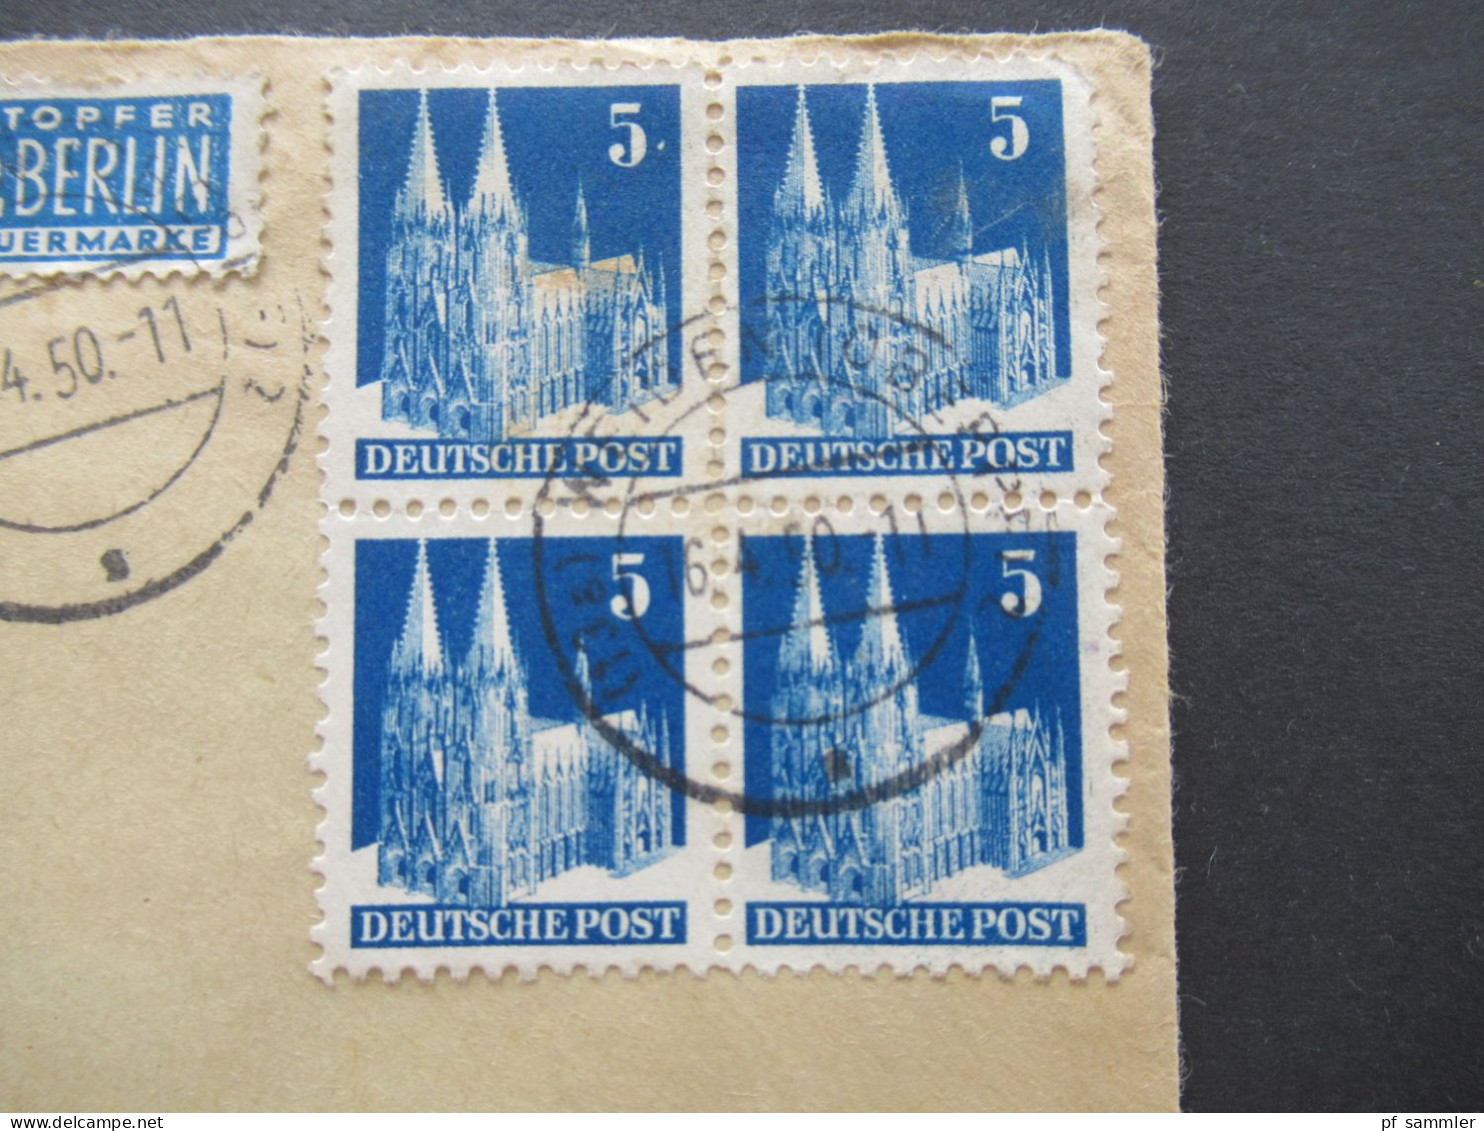 1950 Bizone Bauten Nr.75 (4) MeF Als Viererblock Umschlag Dr. Med. J. Huber Geburtshelfer Weiden Opf. Nach Metten - Briefe U. Dokumente